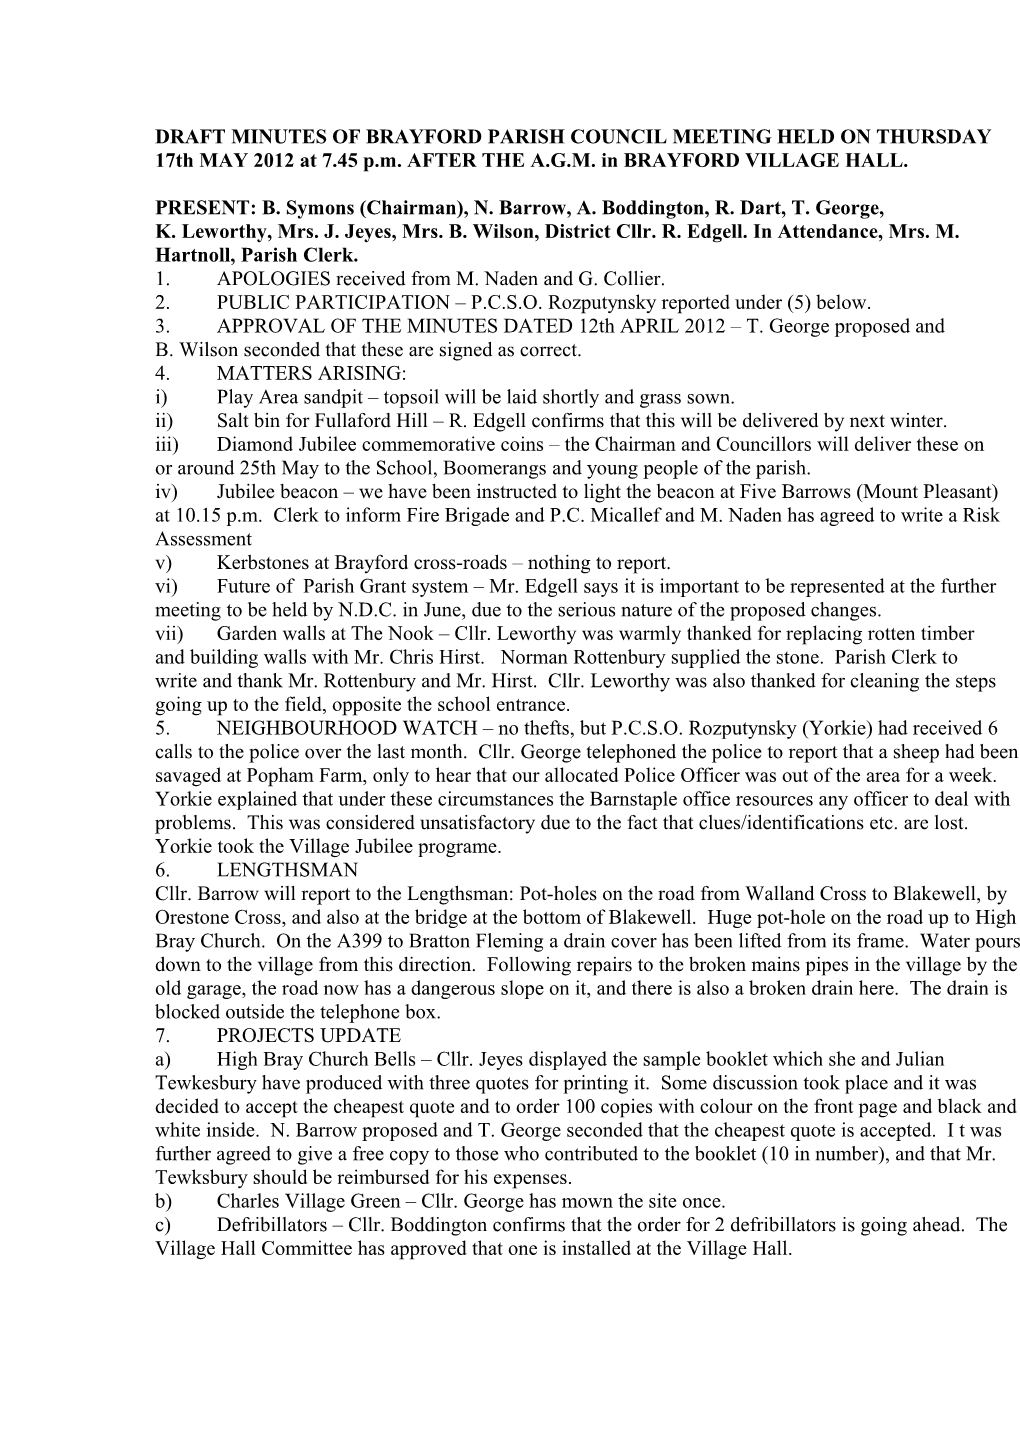 Brayford Parish Council Minutes 17 May 2012